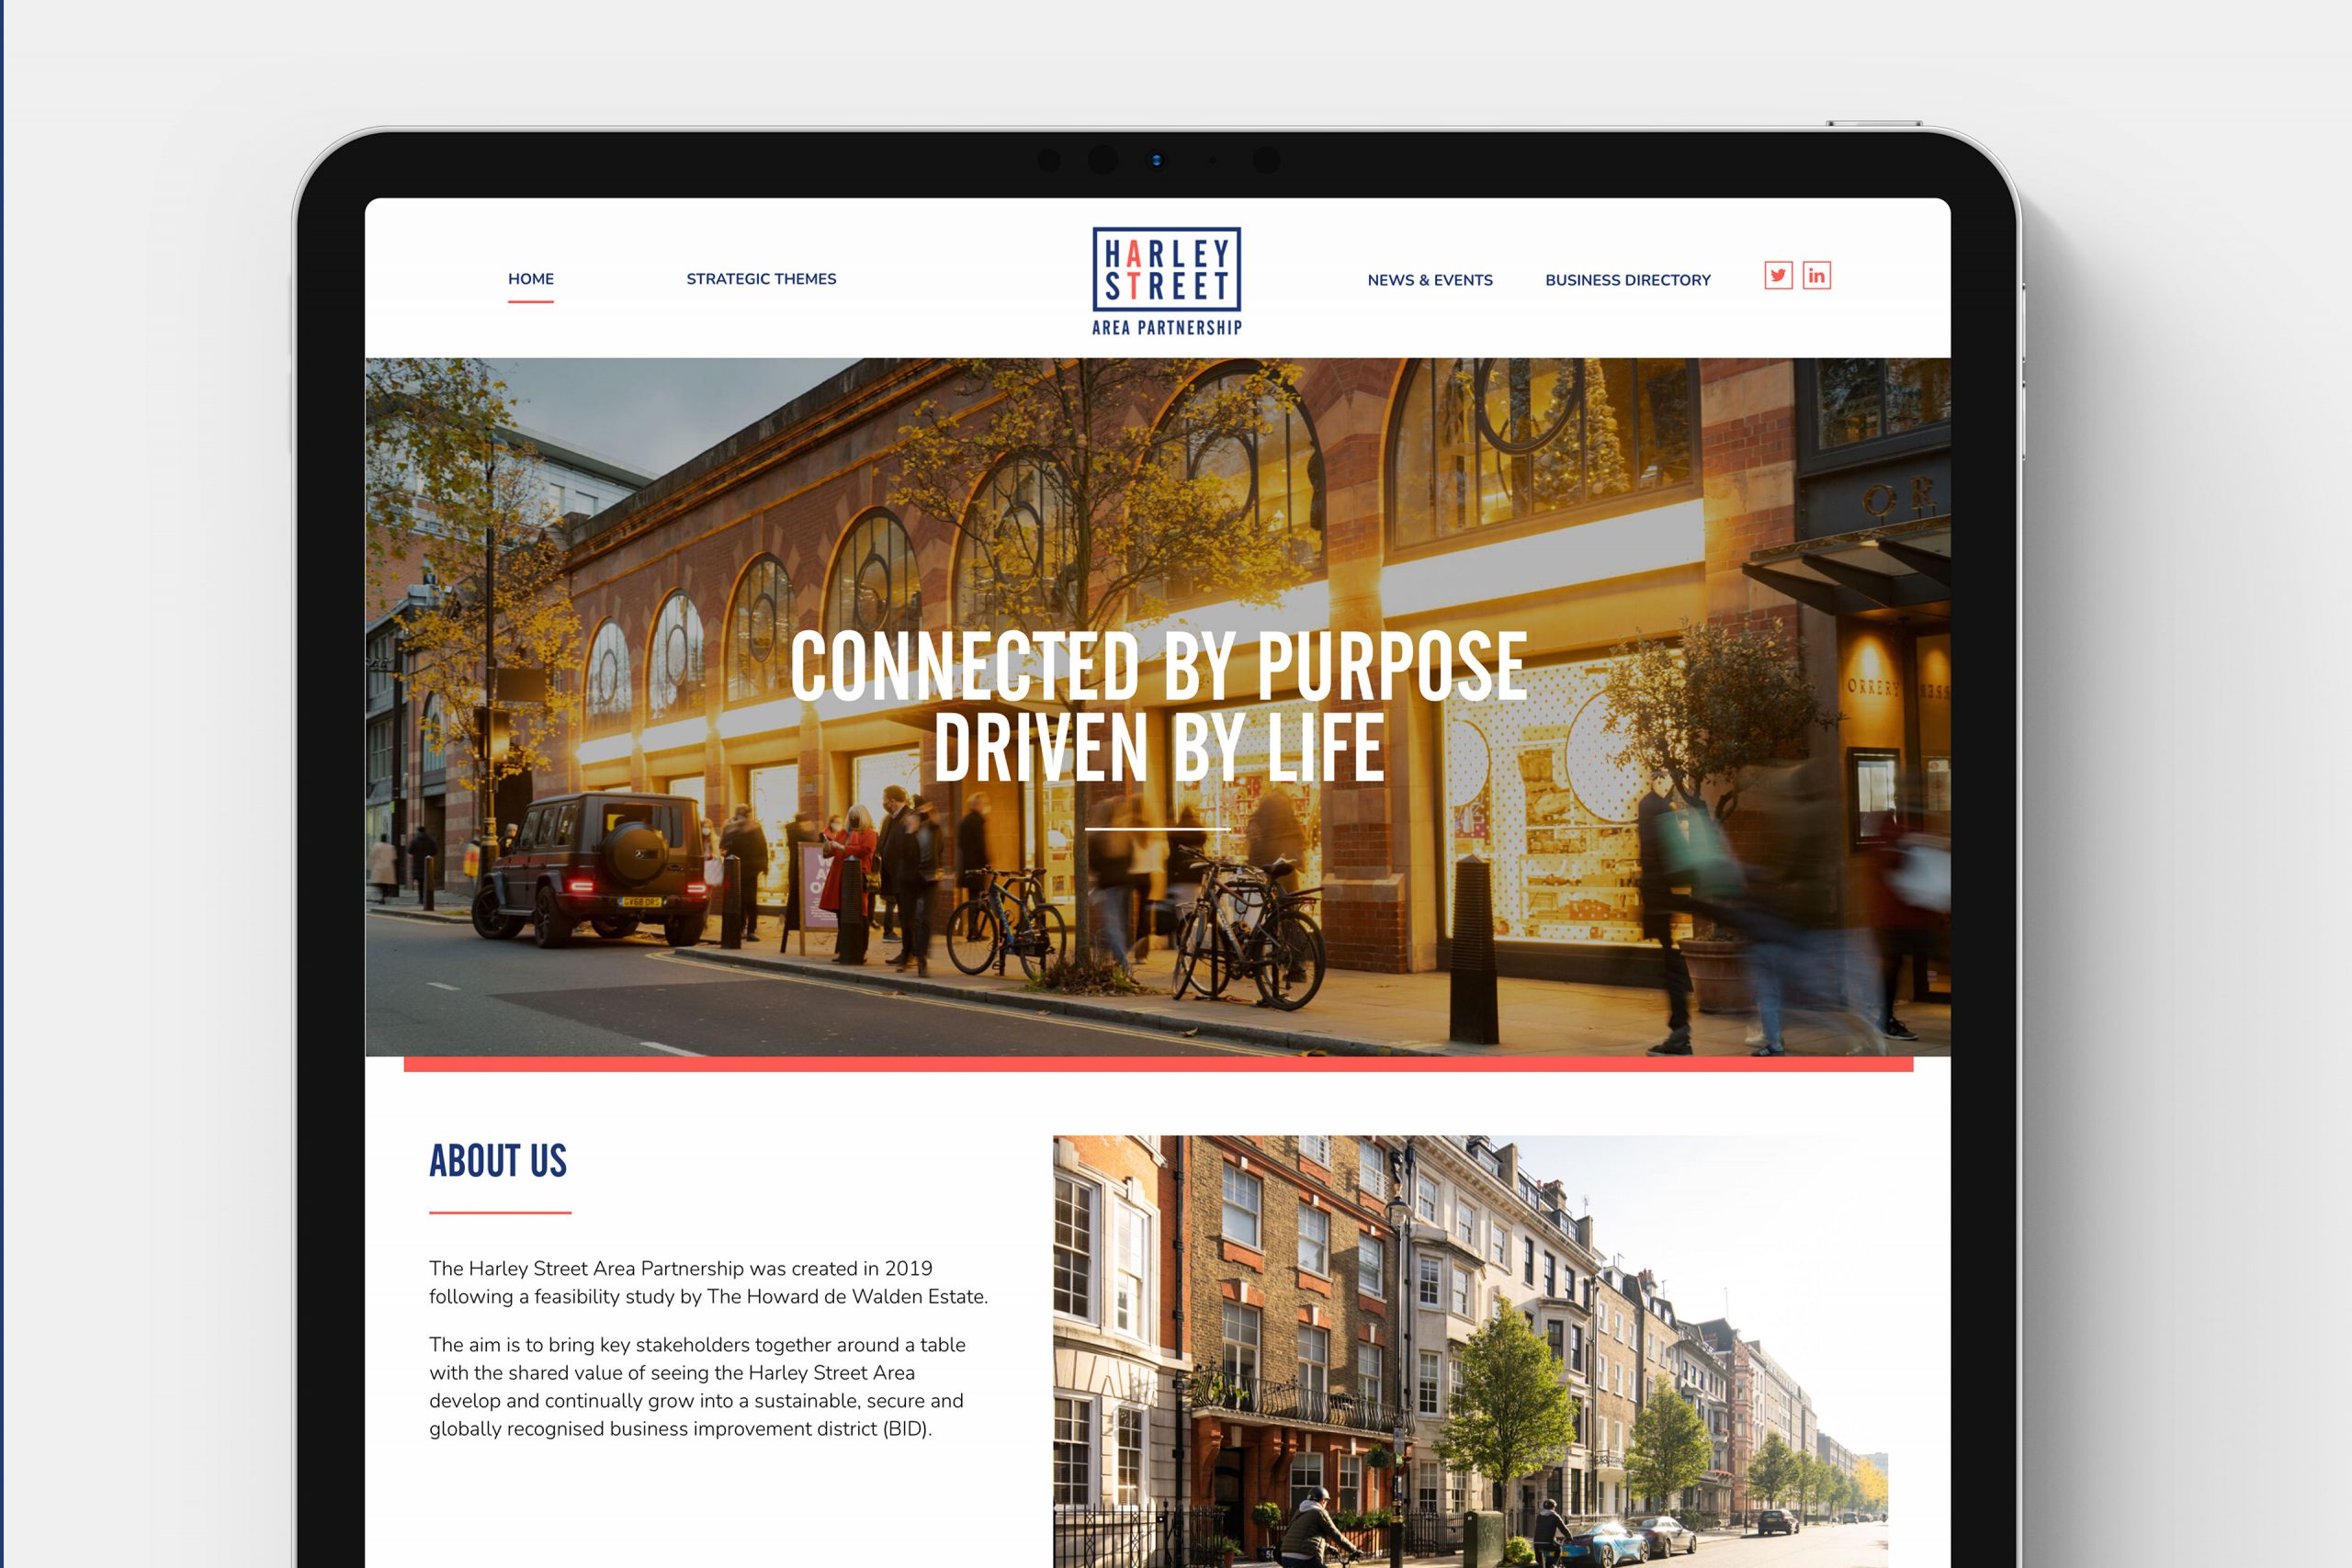 Harley Street website